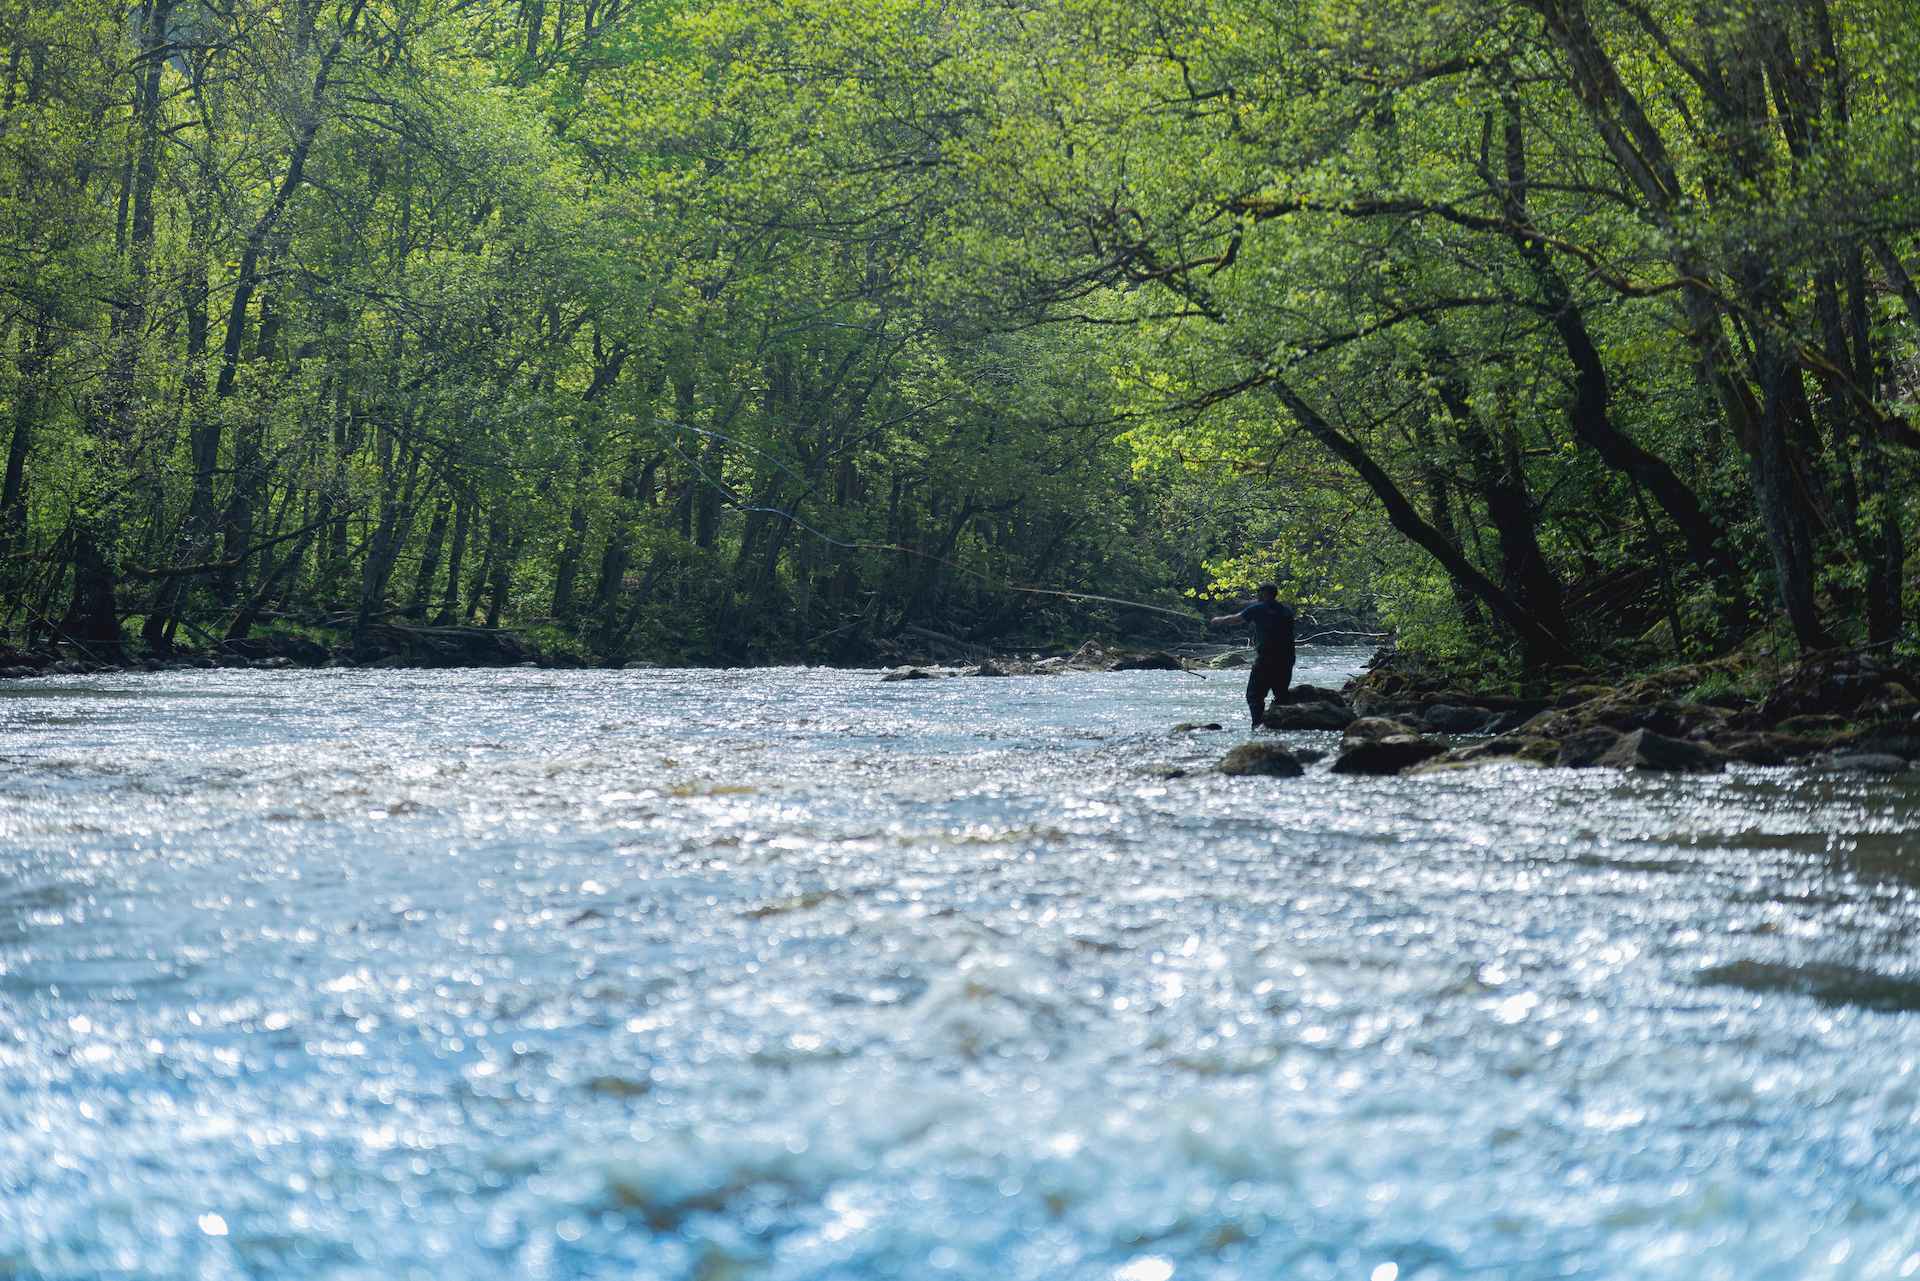 Une personne pêche à la mouche dans la rivière Örekil. La rivière est entourée de verdure.